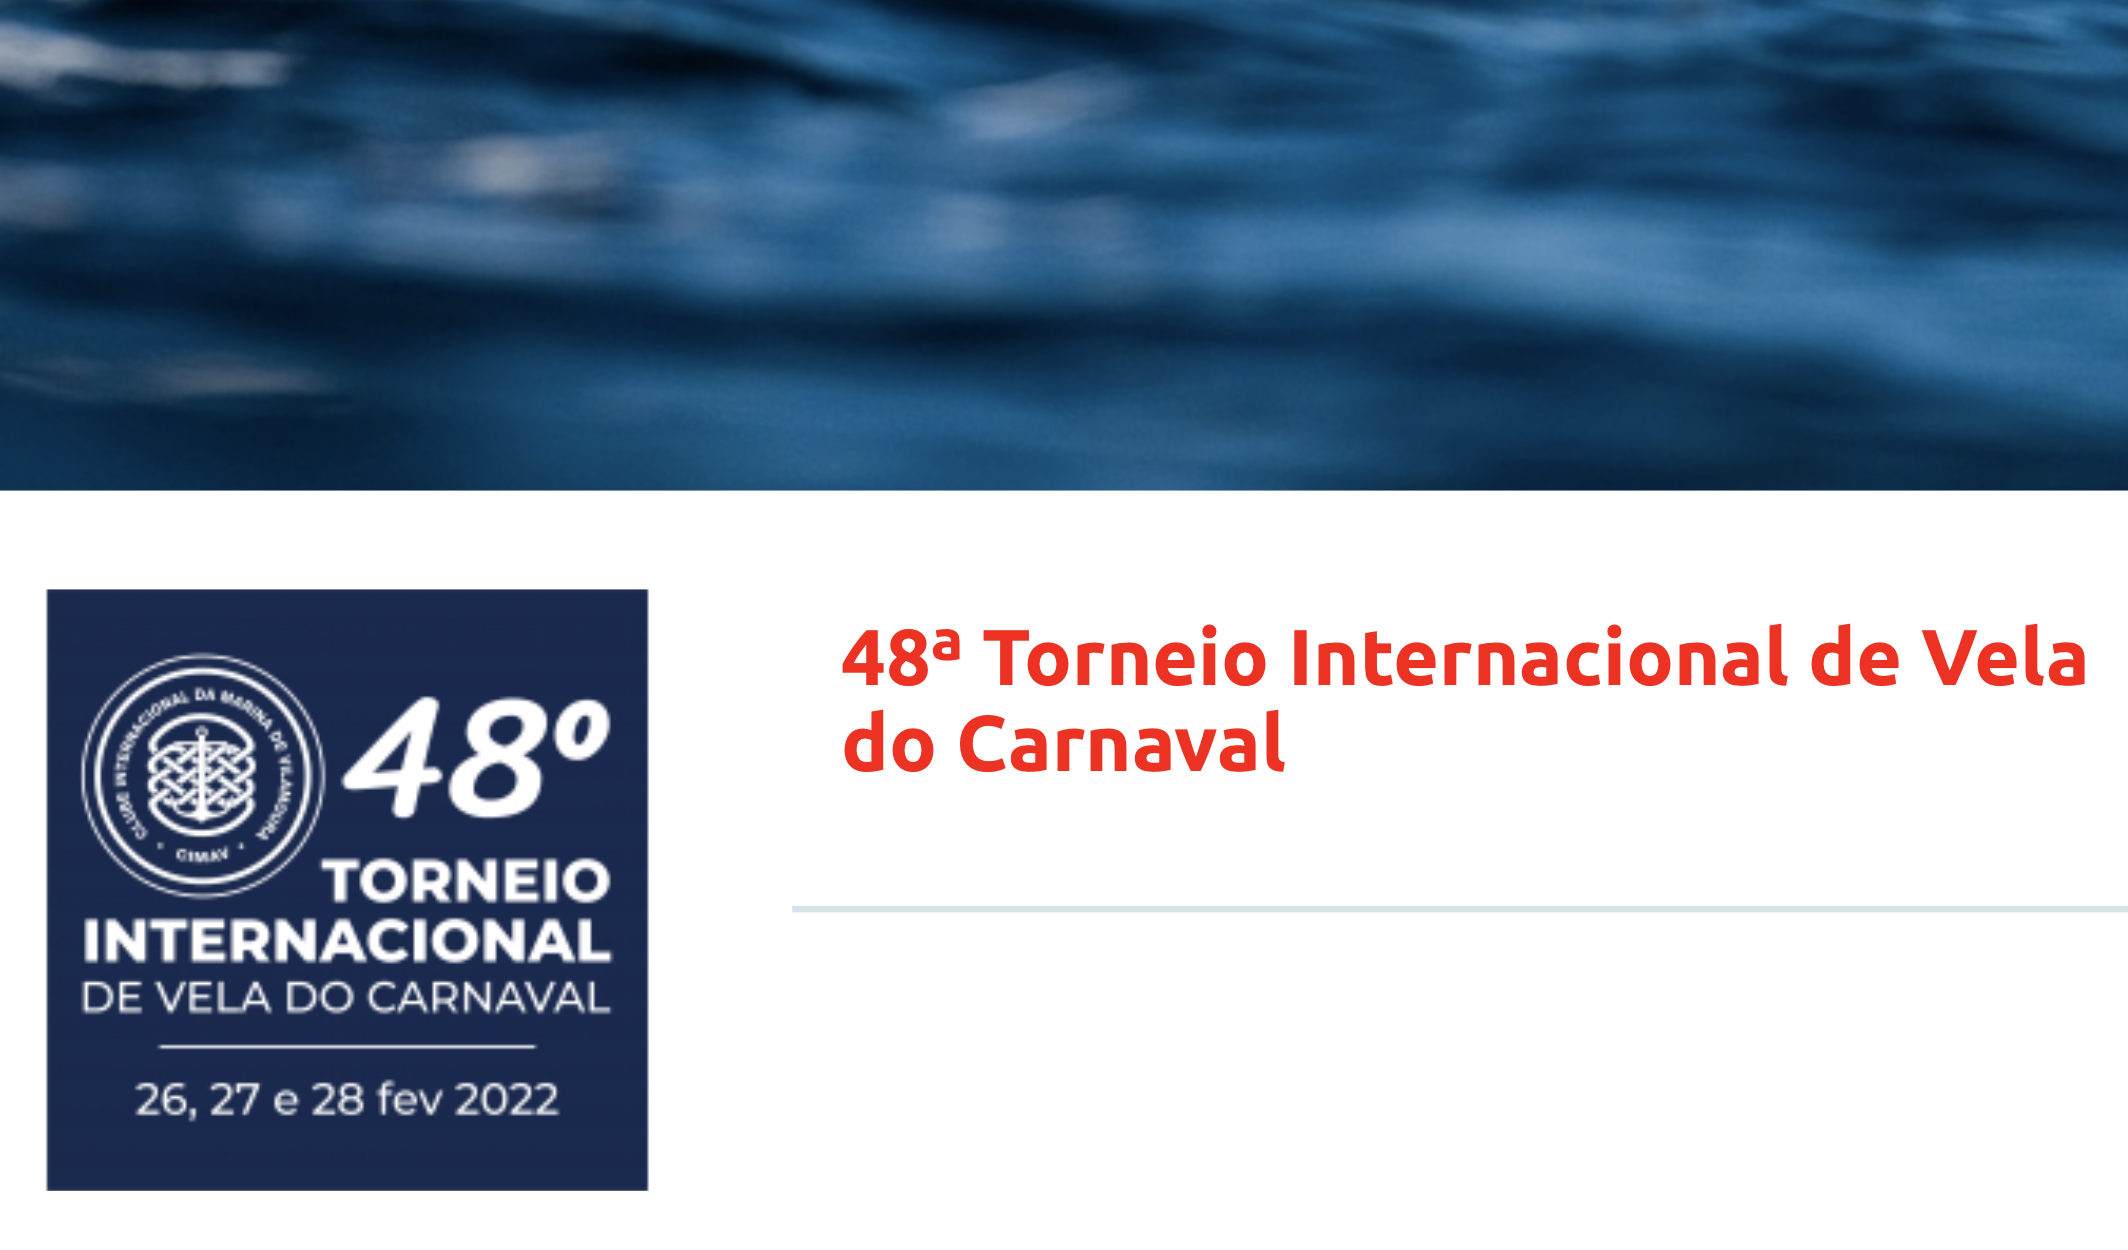 Torneio Internacional de Vela do Carnaval Image